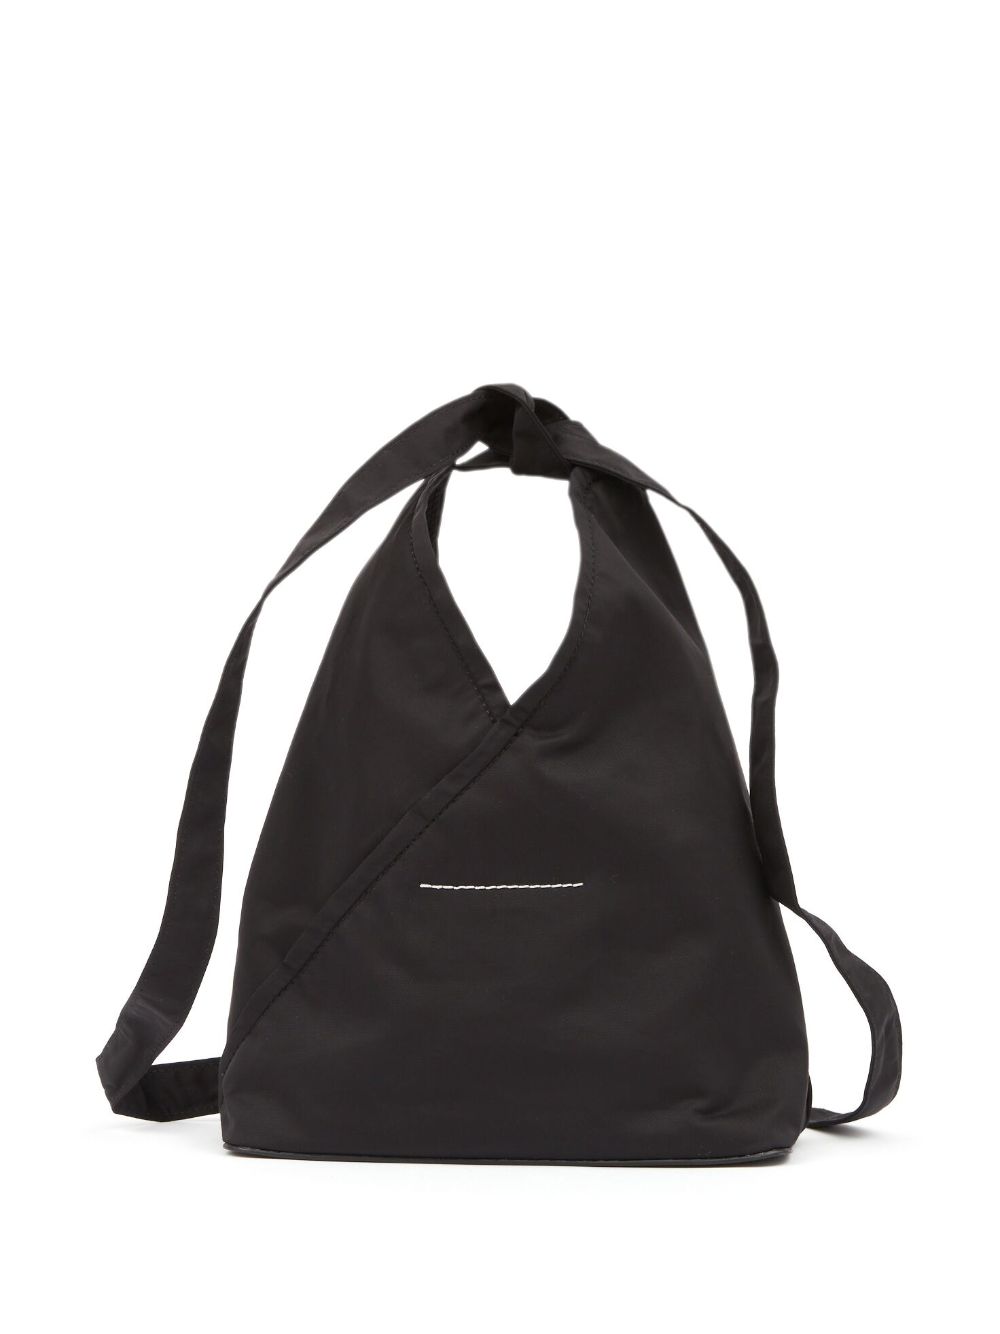 Louis Vuitton Triangle Handbag 319142